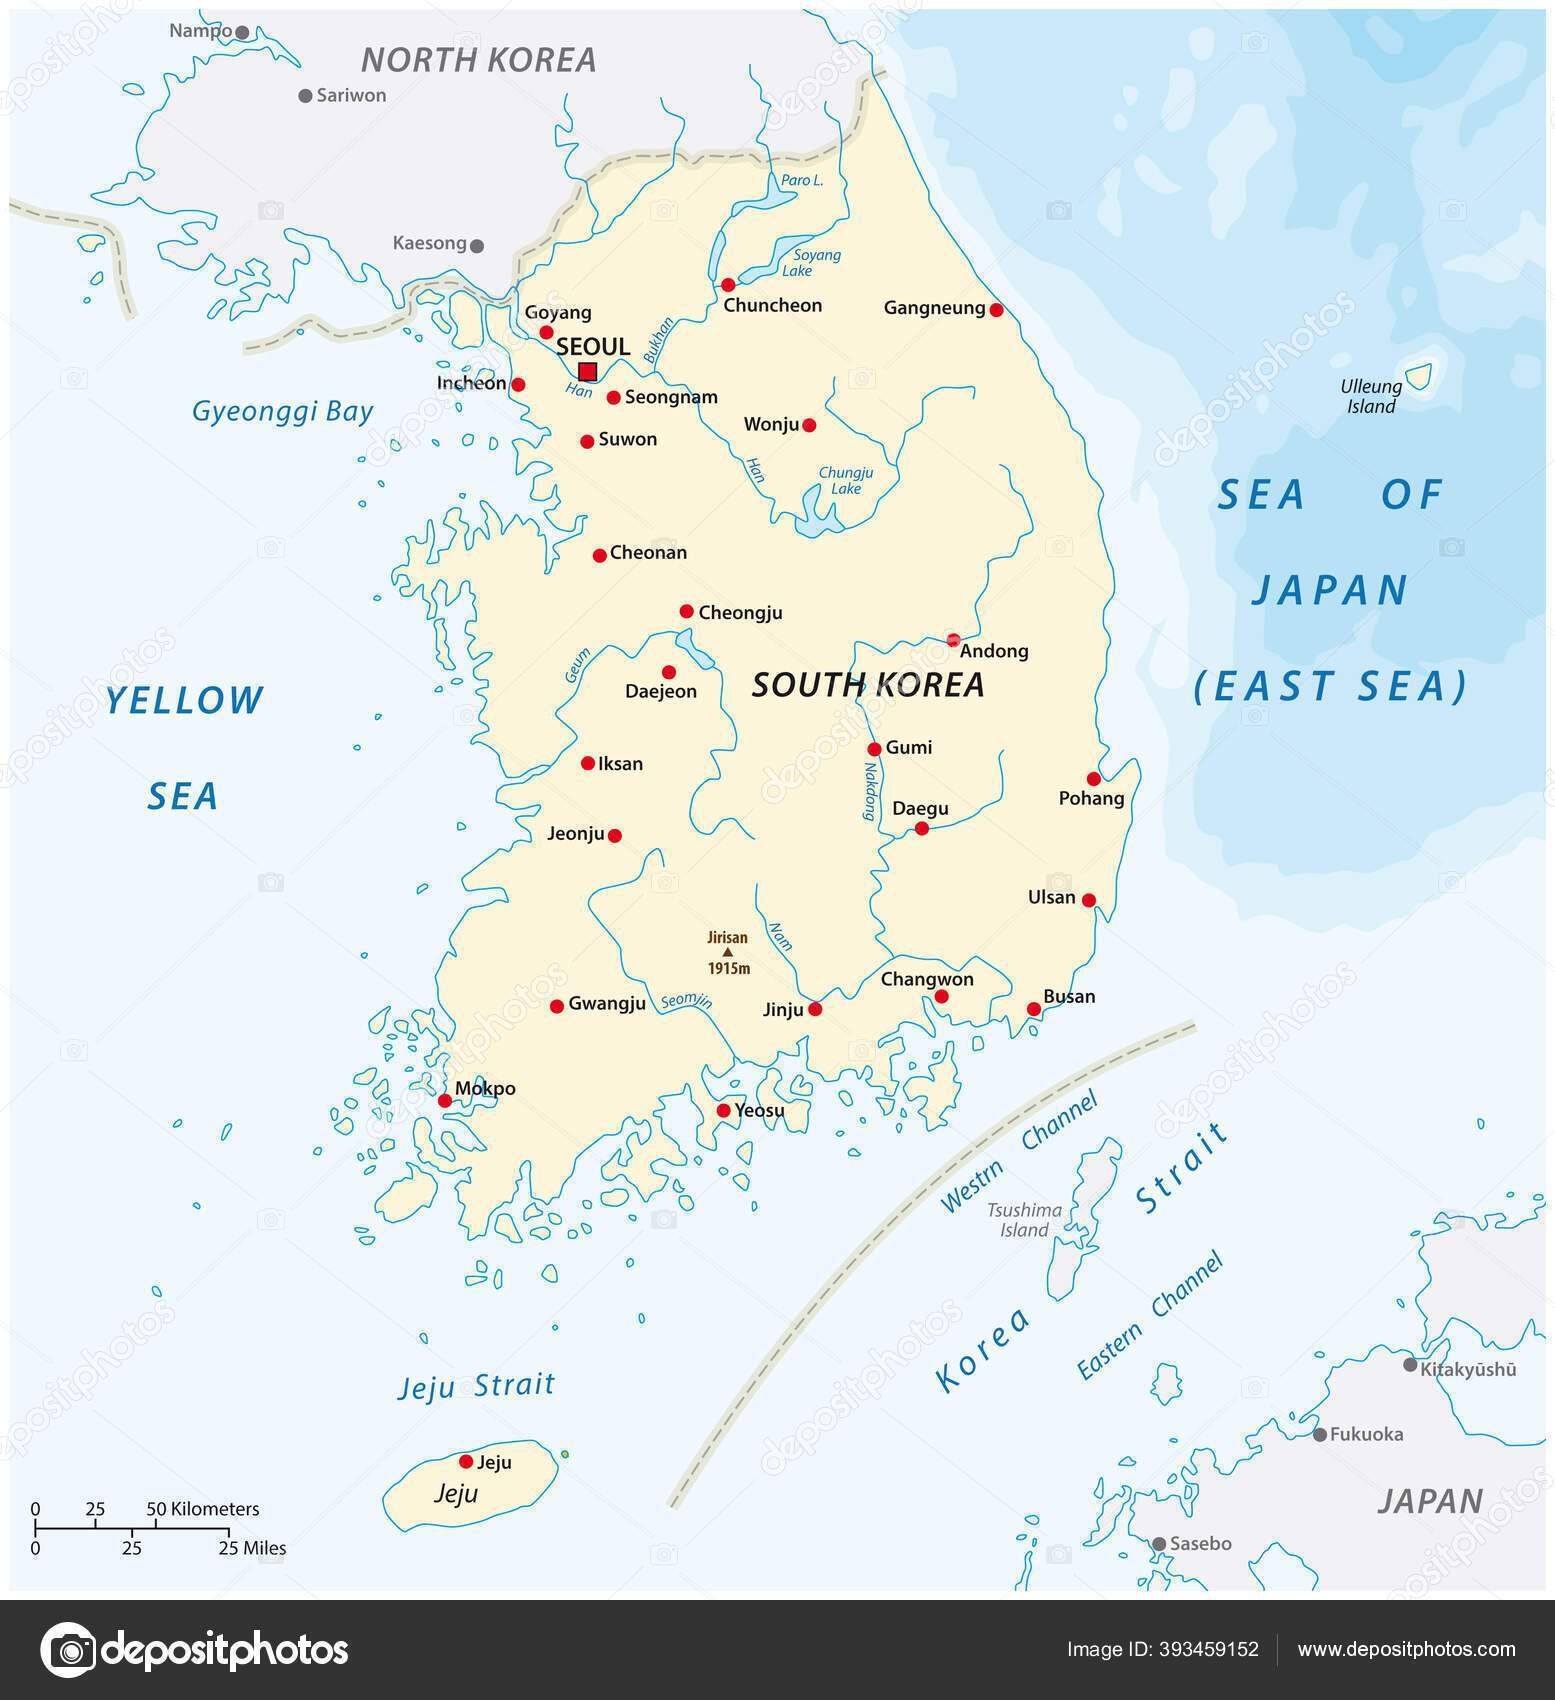 Катер КНДР порушив морський простір Південної Кореї: по ньому відкрили попереджувальний вогонь